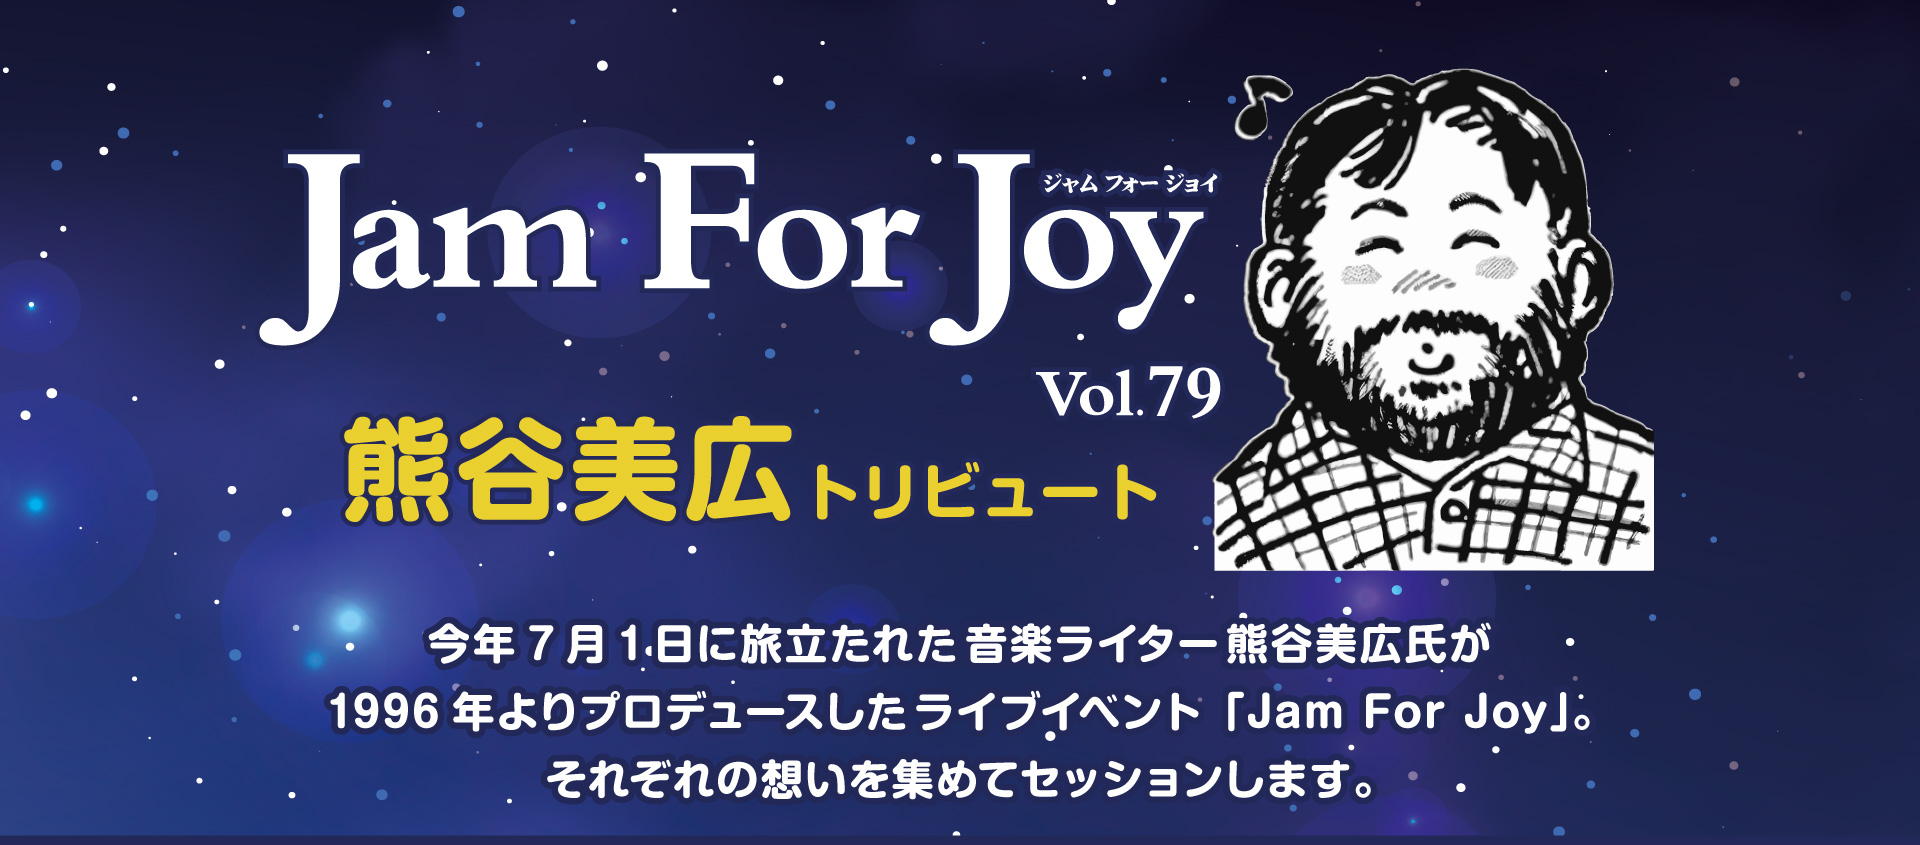 Jam For Joy vol.79「熊谷美広トリビュート」 今年7月1日に旅立たれたライター熊谷美広氏が
1996年よりプロデュースしたライブイベント「Jam For Joy」。それぞれの想いを集めてセッションします。